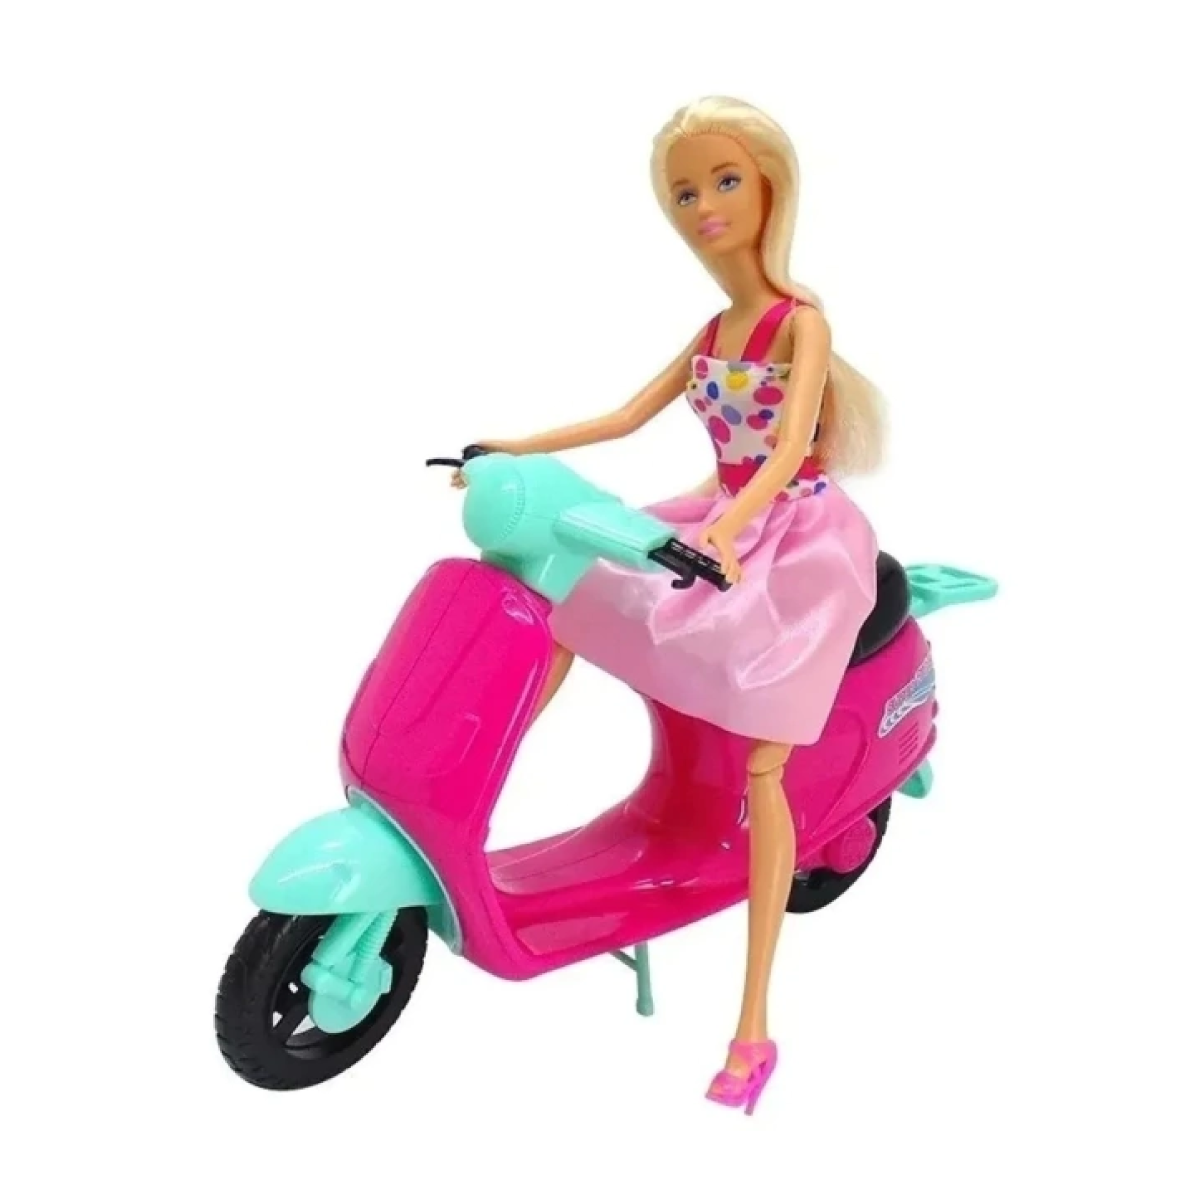 Muñeca Kiara y Su Moto De Paseo Poppi Doll